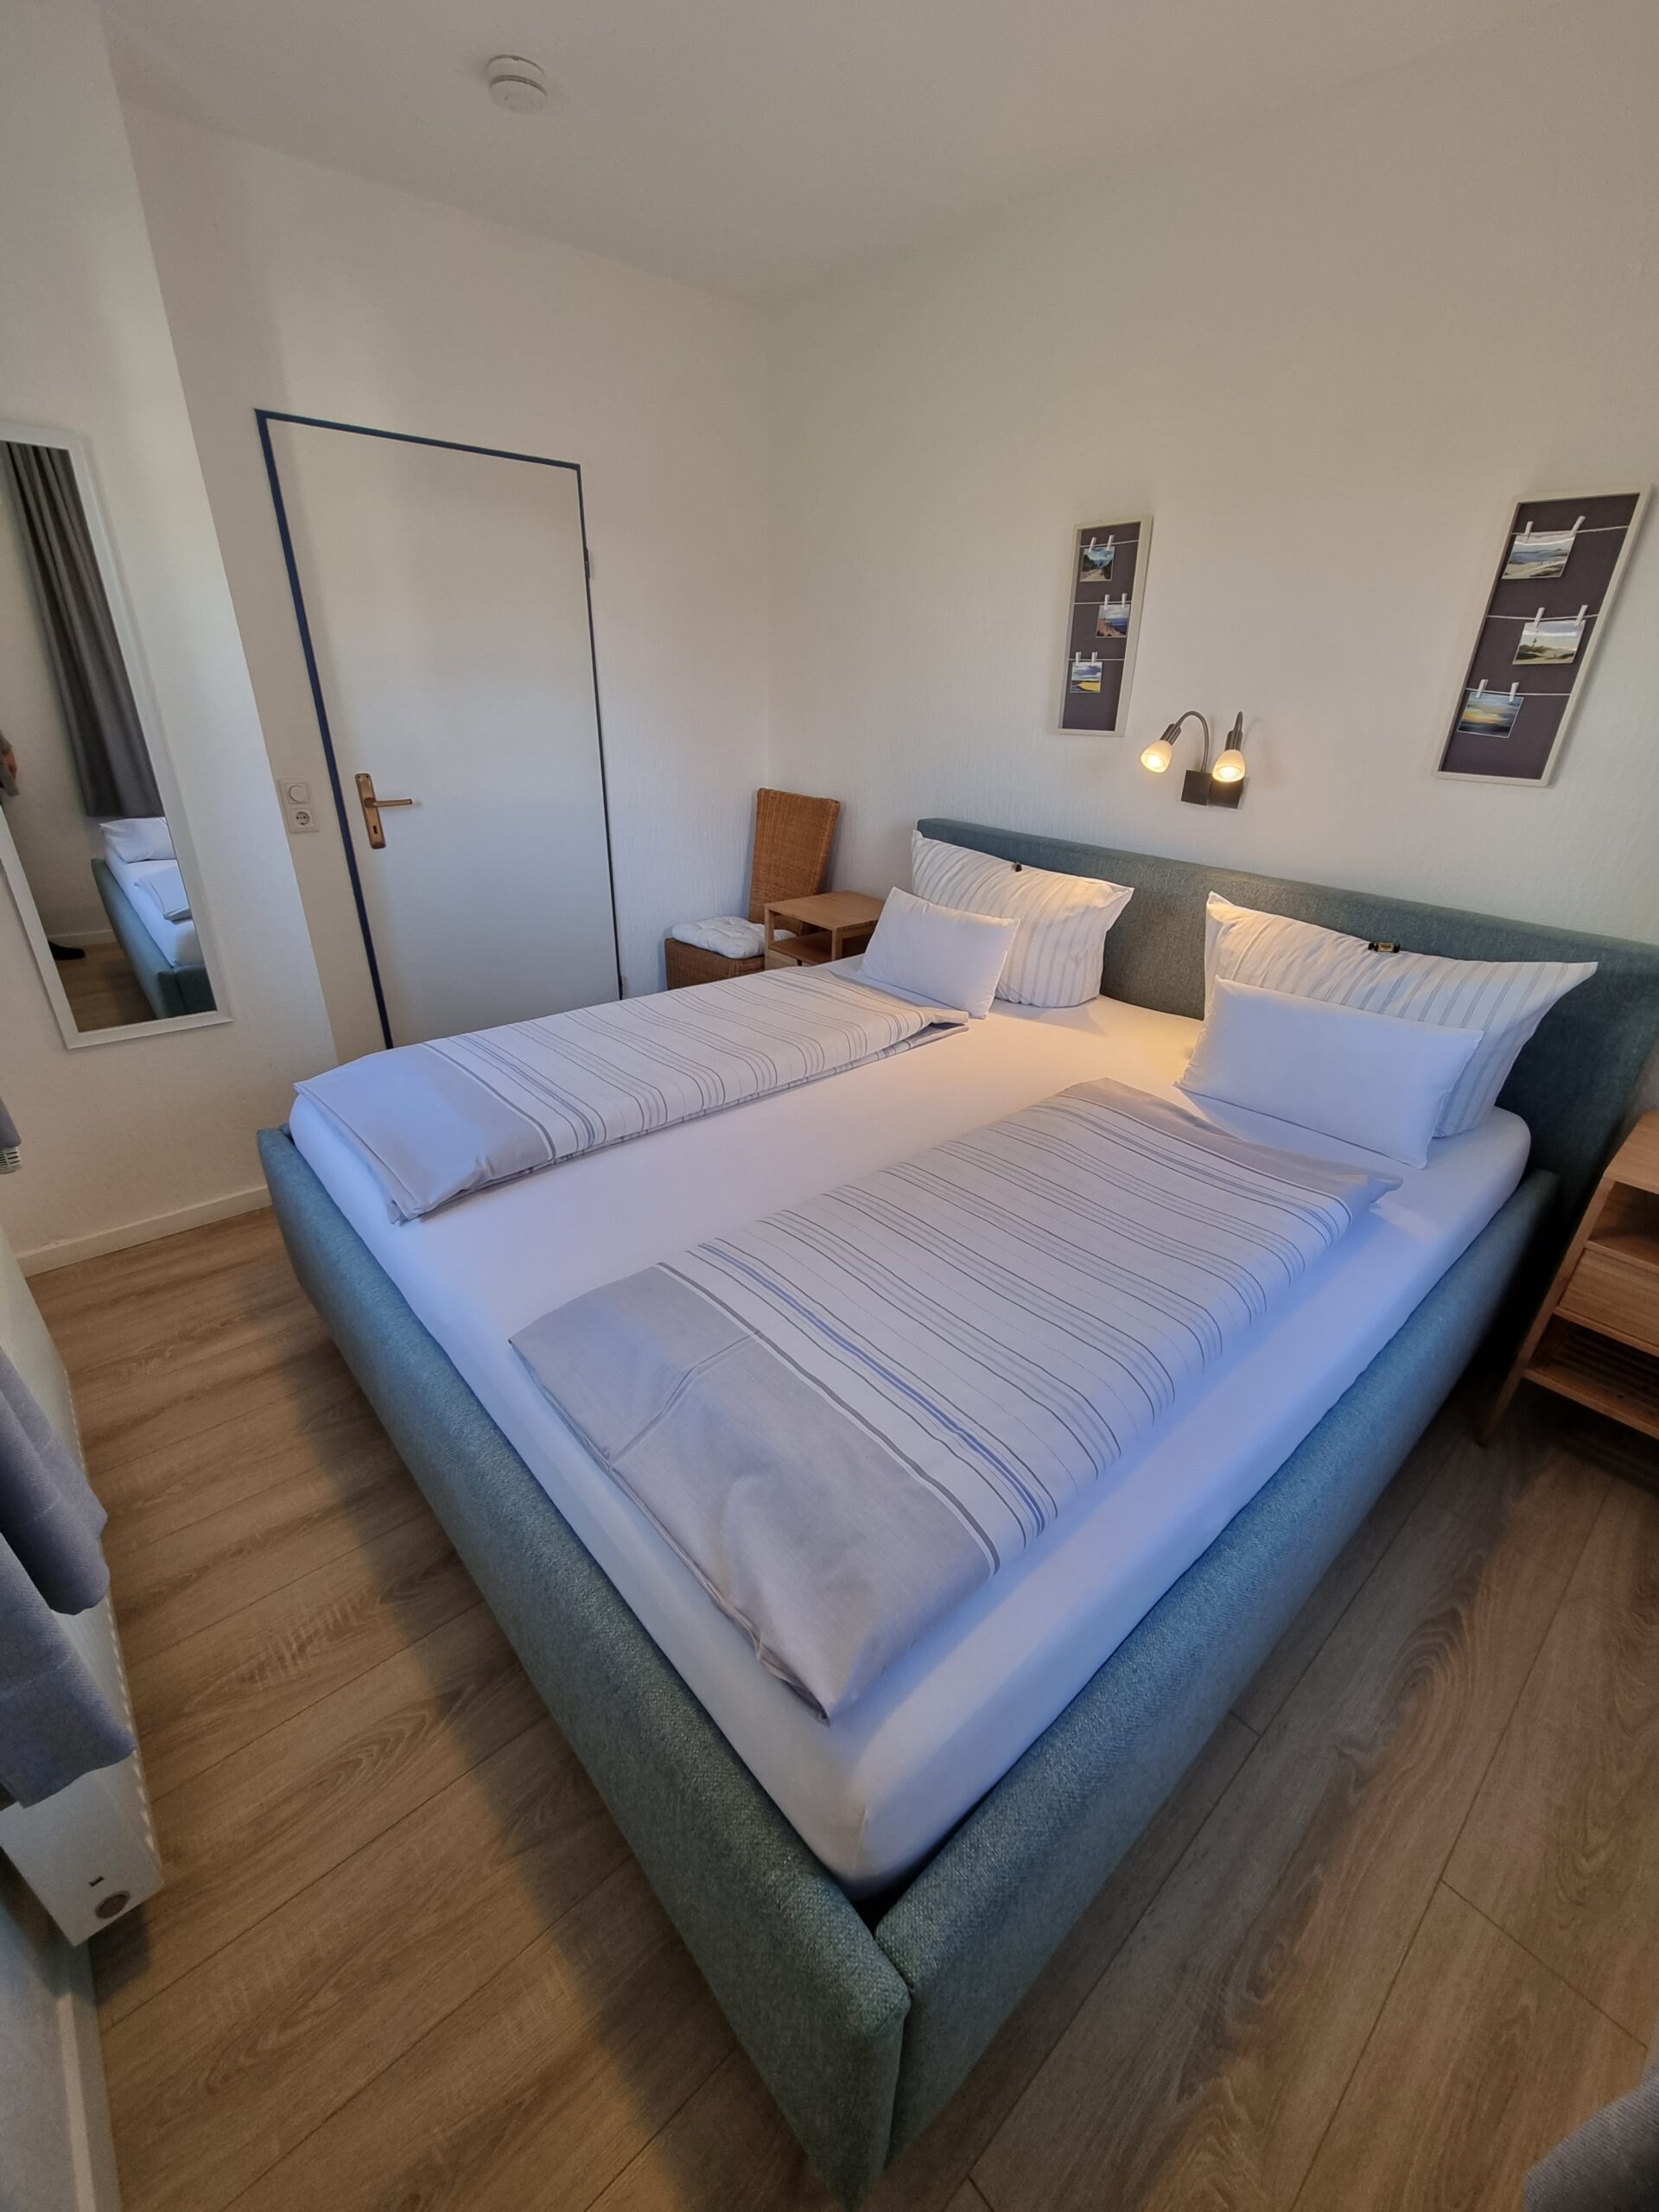 Doppelbettzimmer in einer Hotelsuite im Hotel Friesenhuus